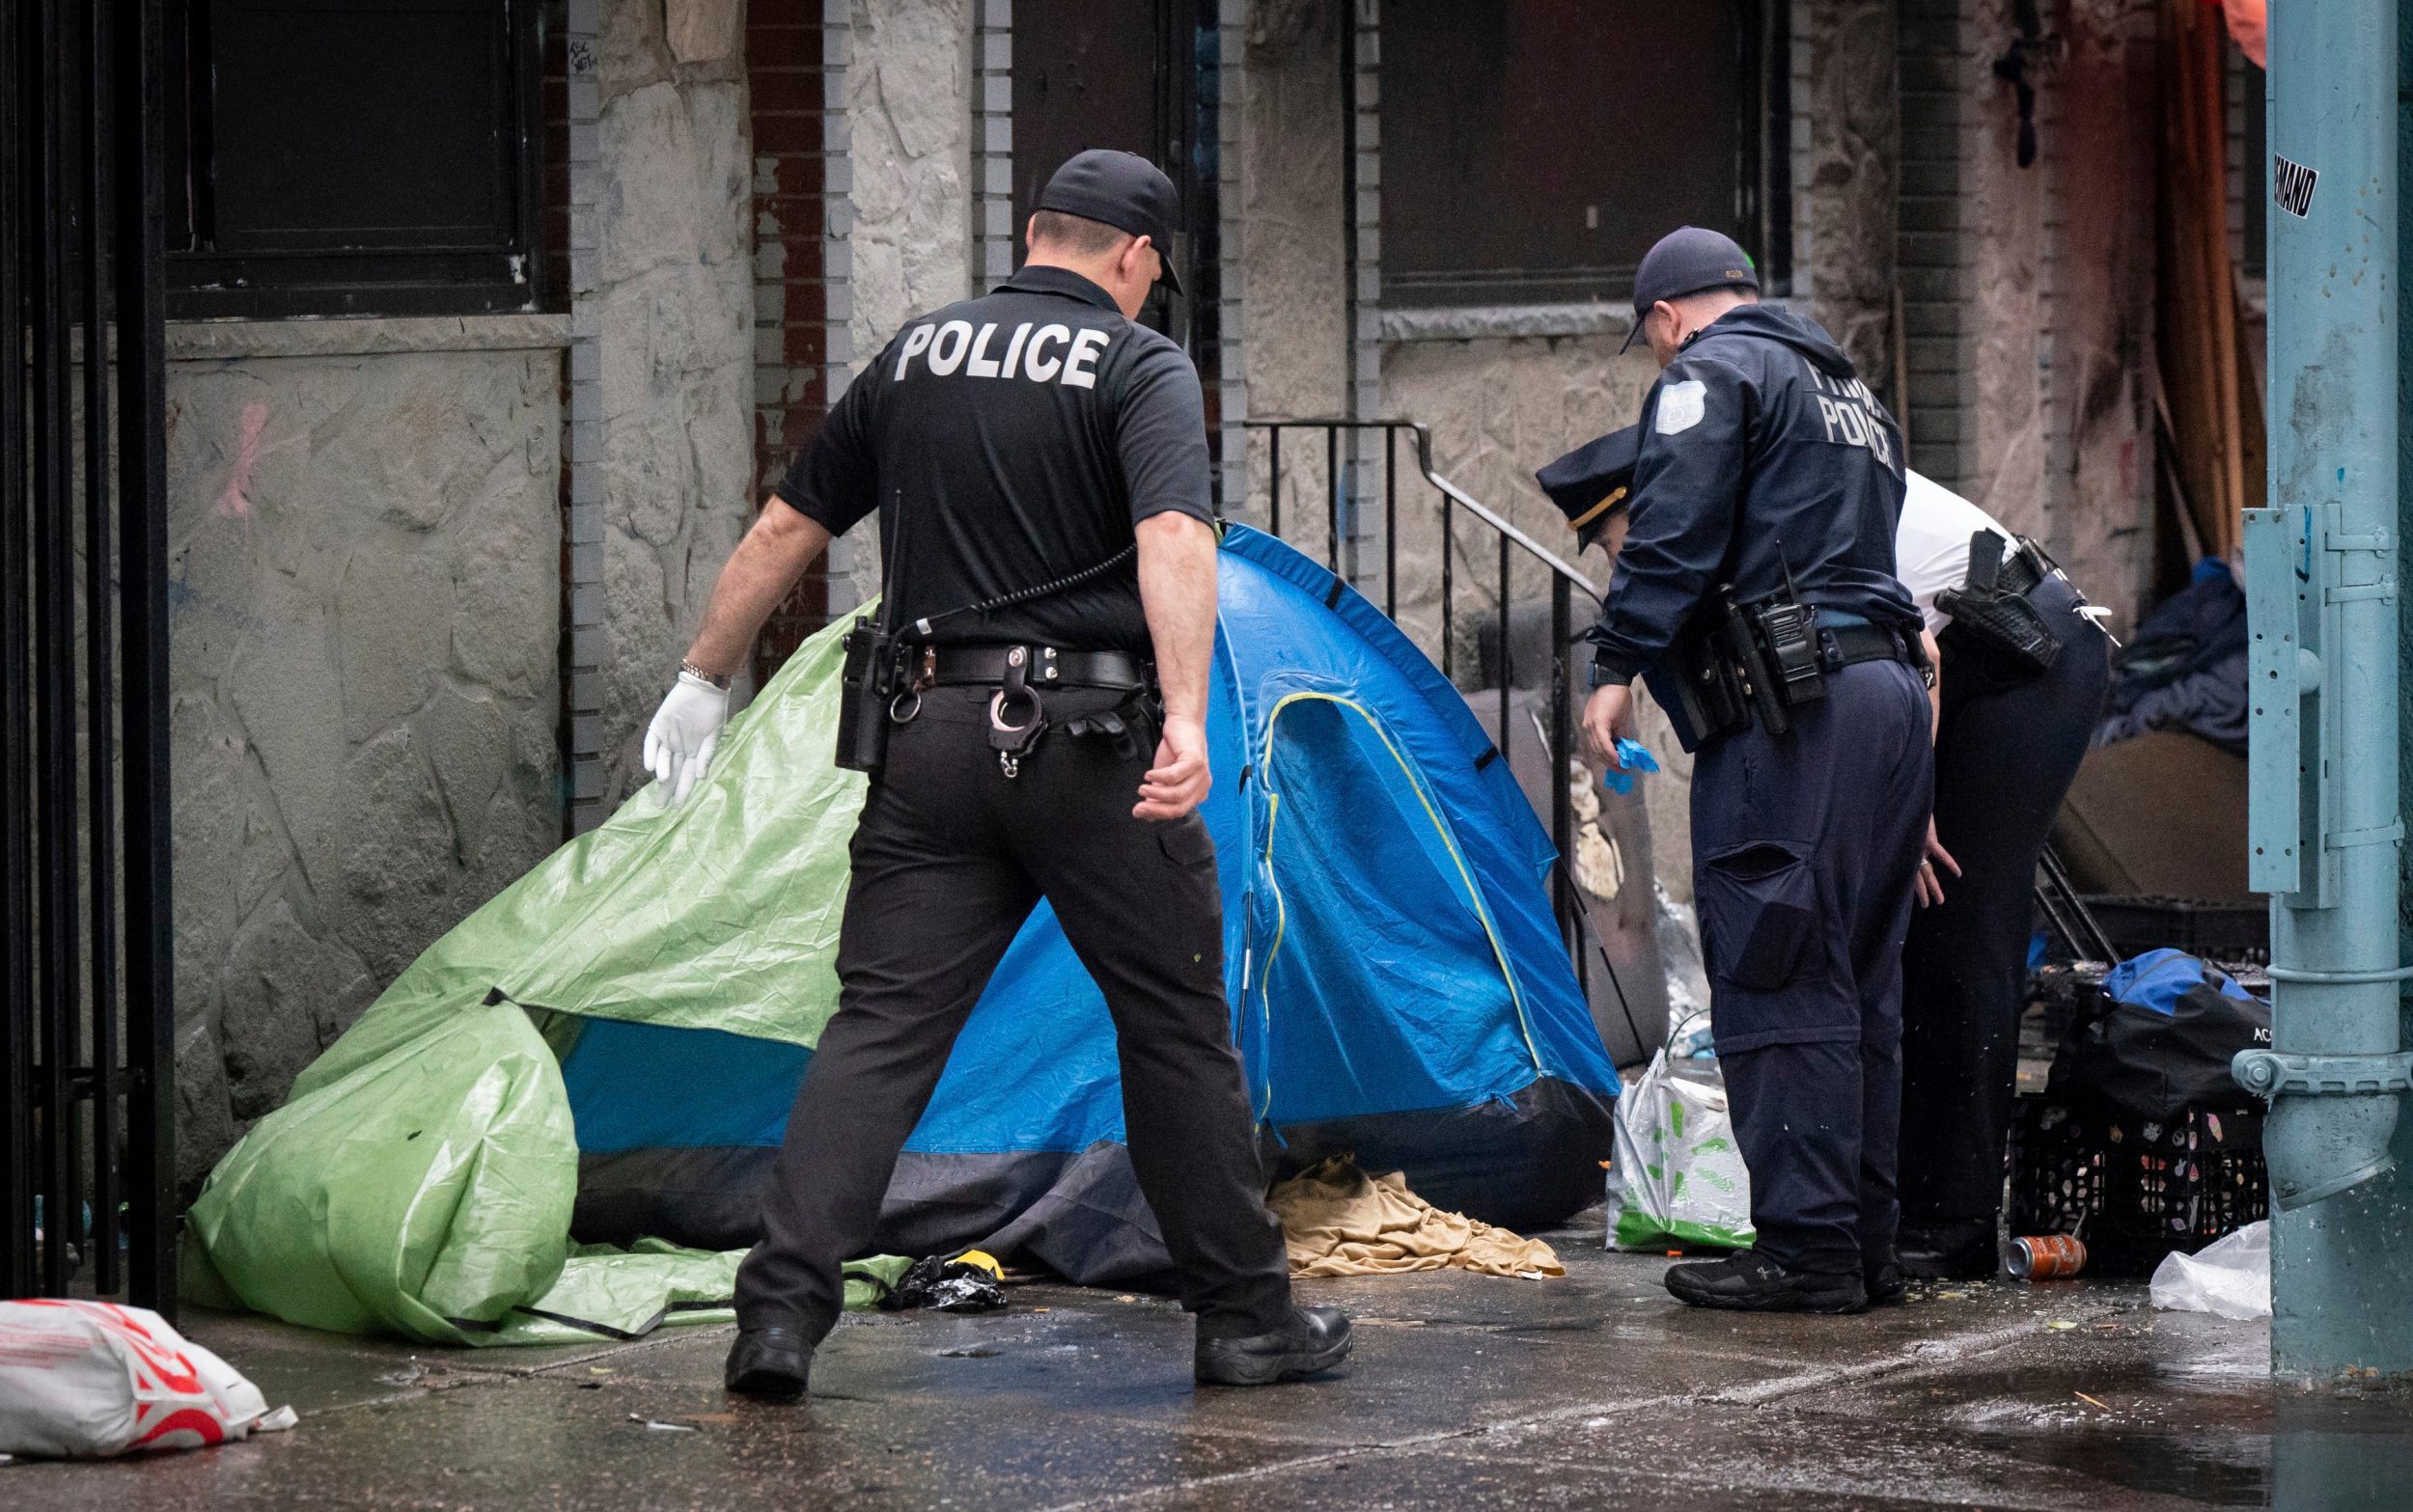 philadelphia police dismantle homeless encampment in drug-ridden area